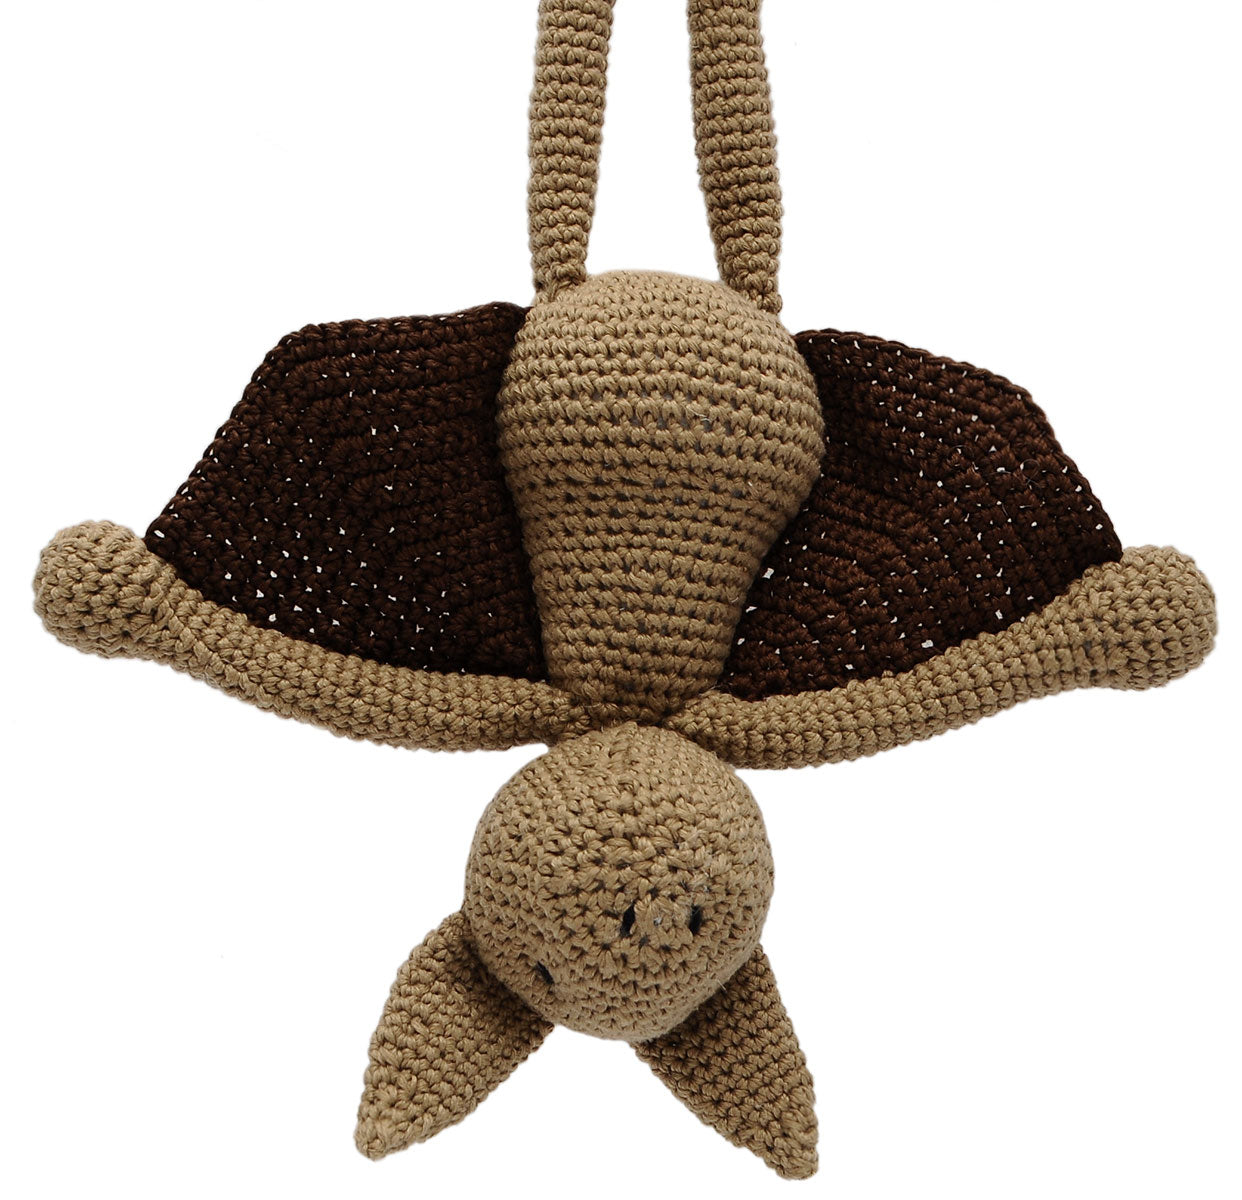 Brown Bat Handmade Amigurumi Stuffed Toy Knit Crochet Doll VAC